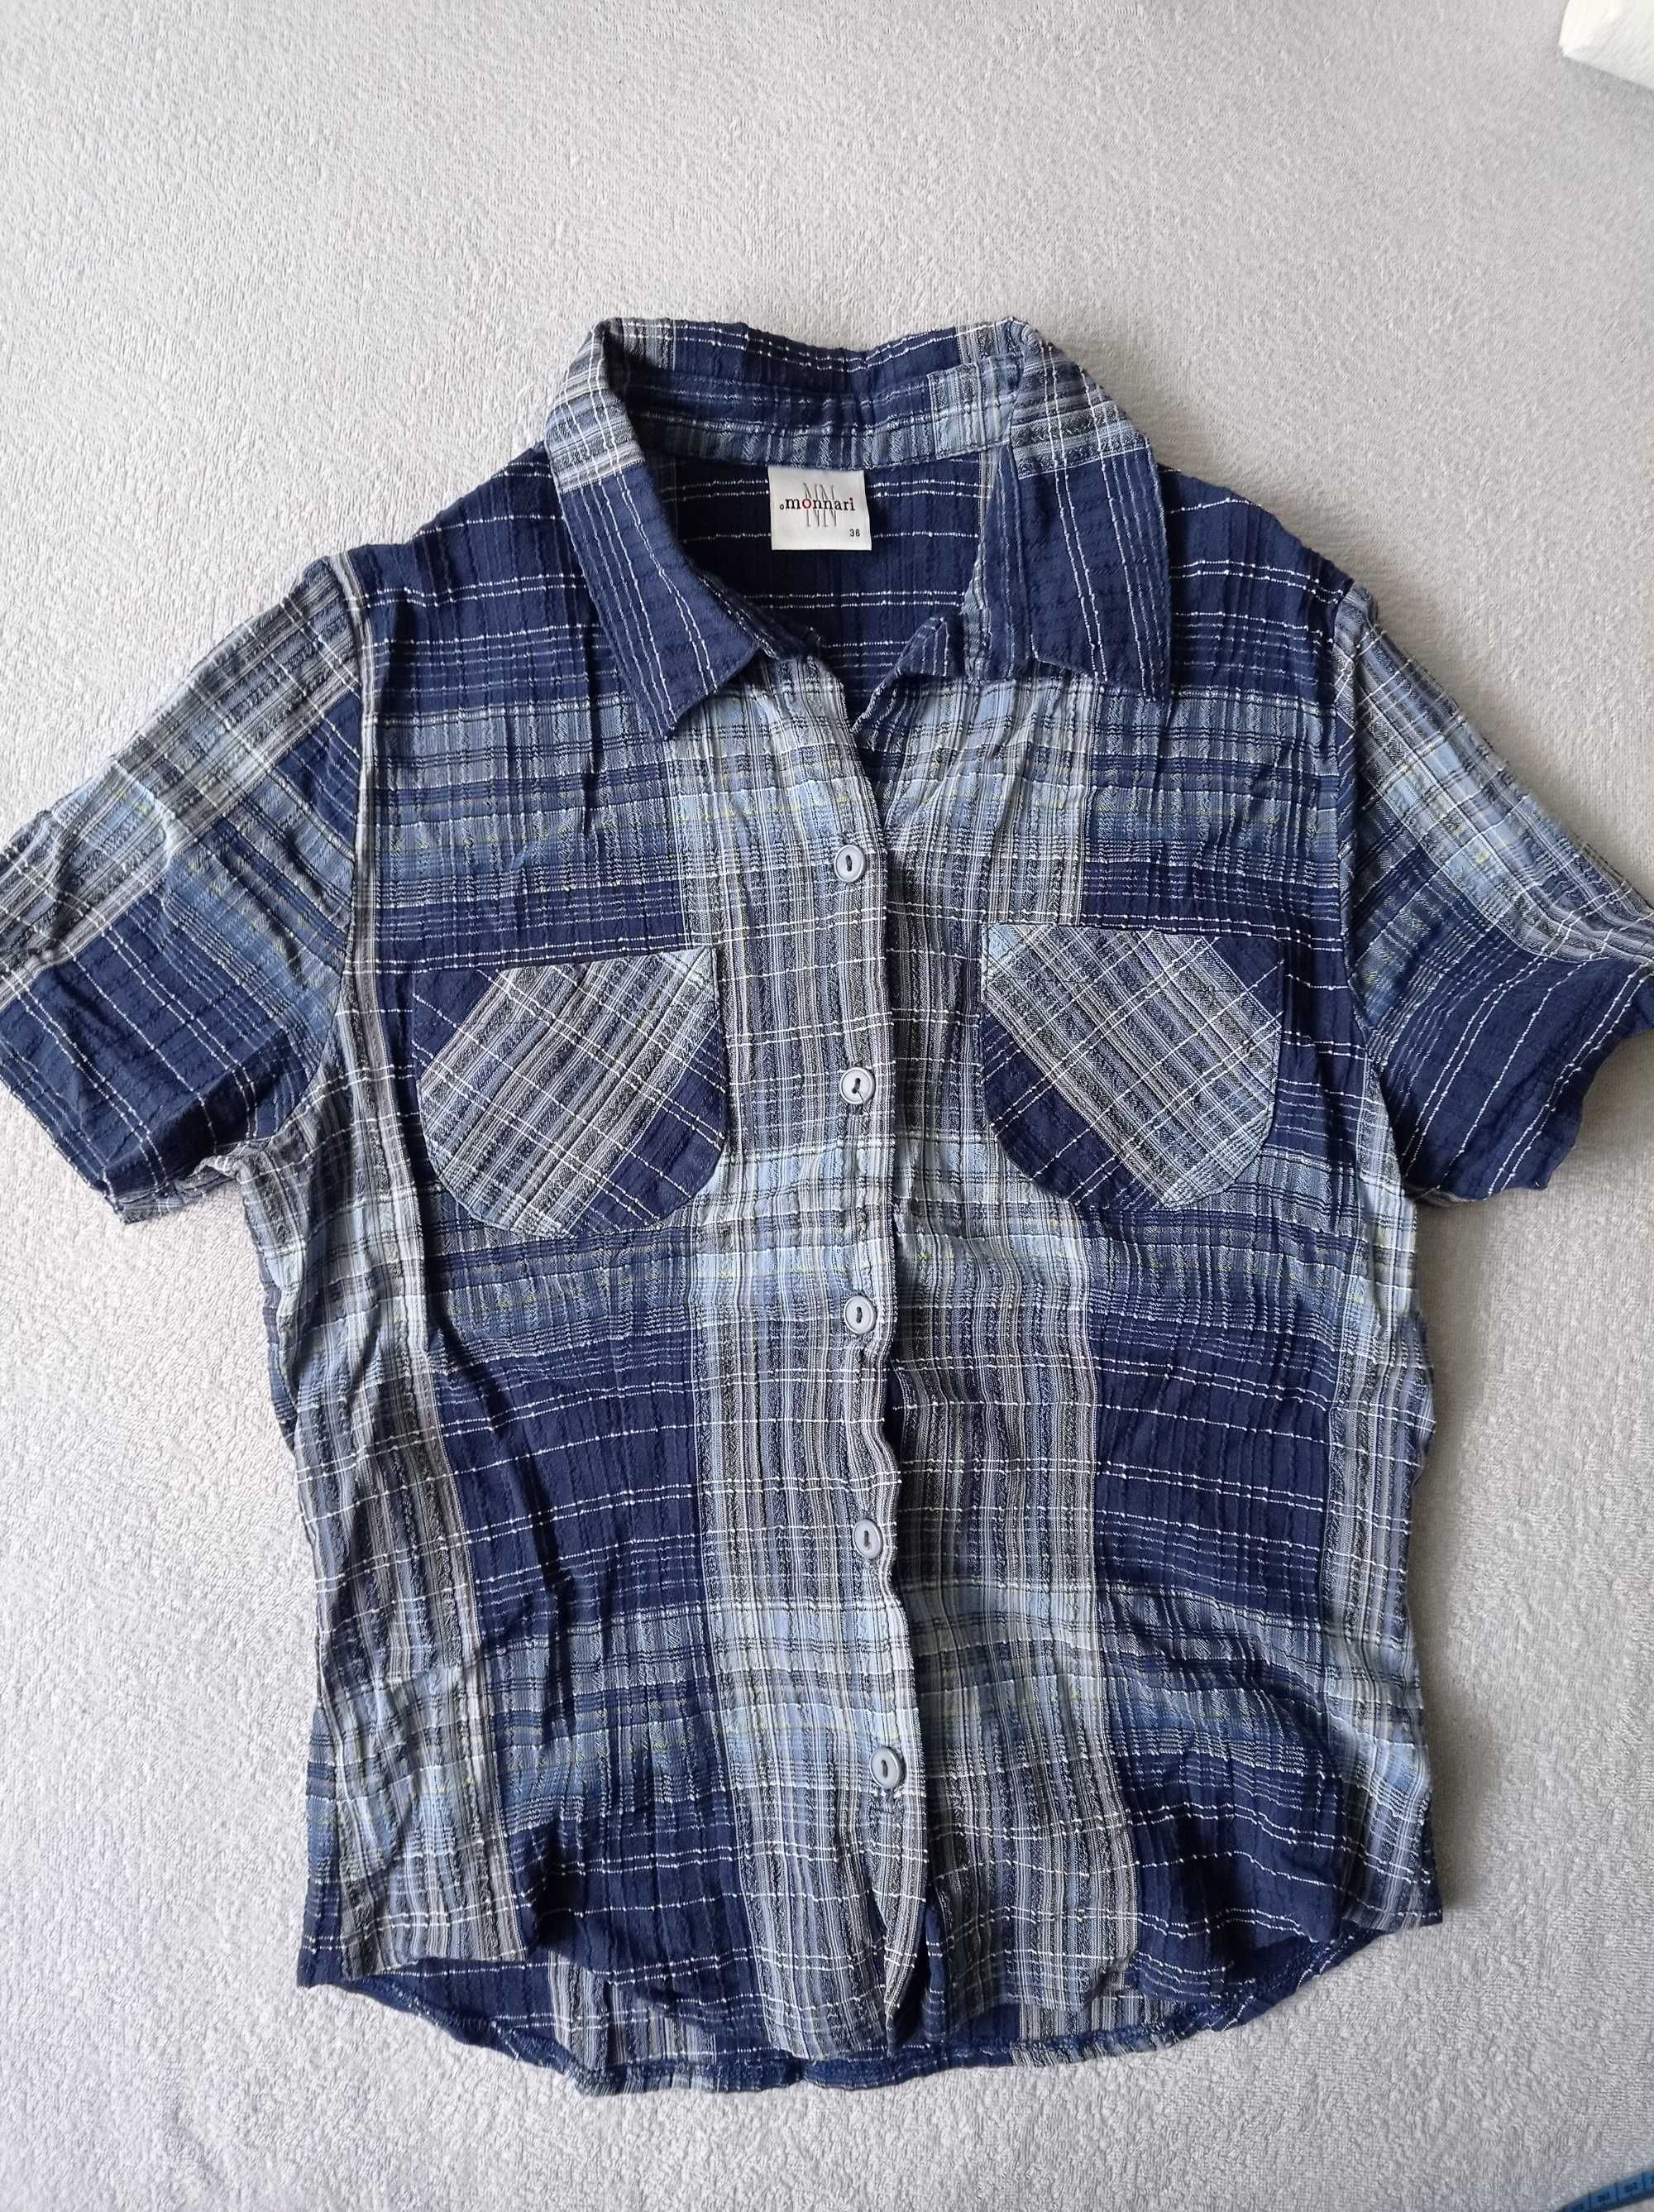 Koszula z krótkim rękawem, bluzka koszulowa, Monnari 36, S, kratka